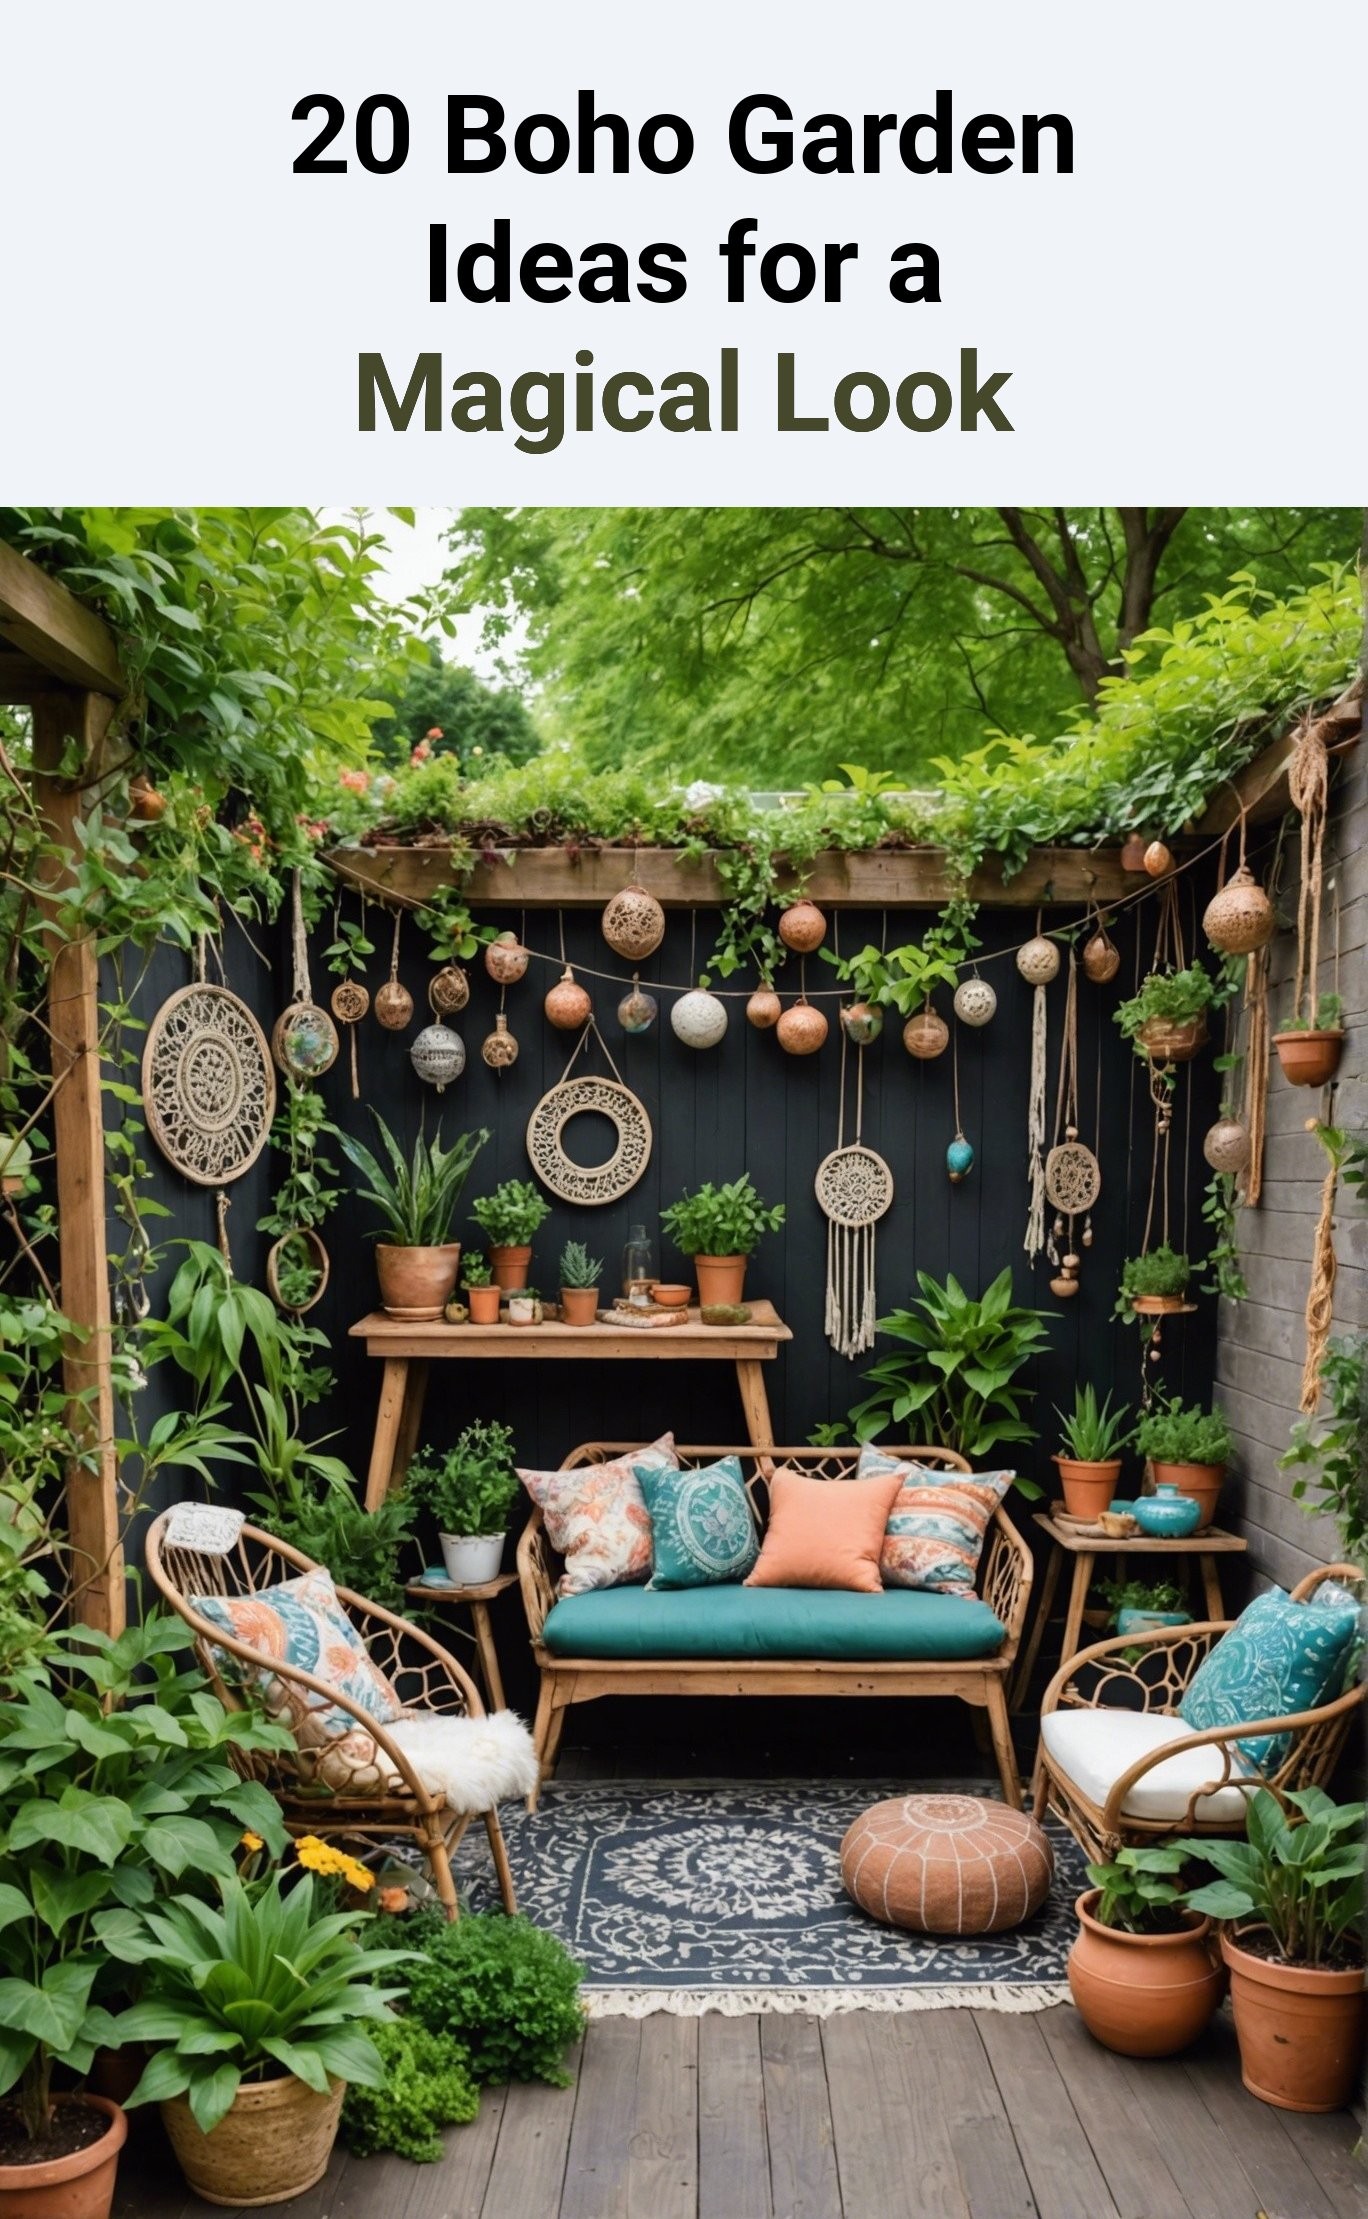 20 Boho Garden Ideas for a Magical Look